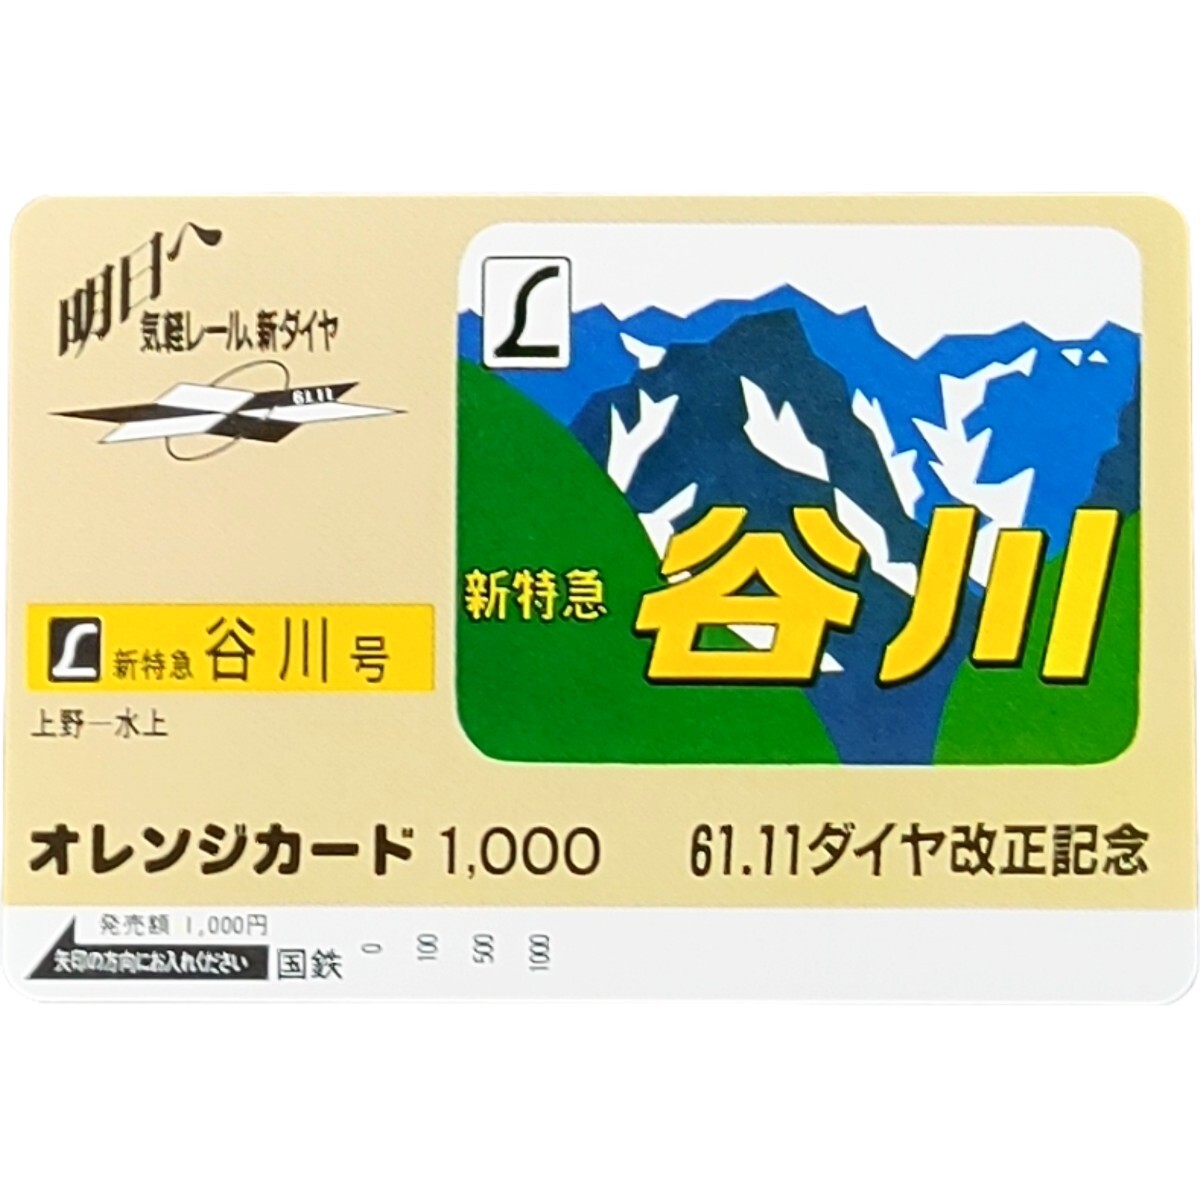 未使用 特急 谷川号 国鉄 オレカ1,000円 61.11 ダイヤ改正記念 オレンジカード の画像1